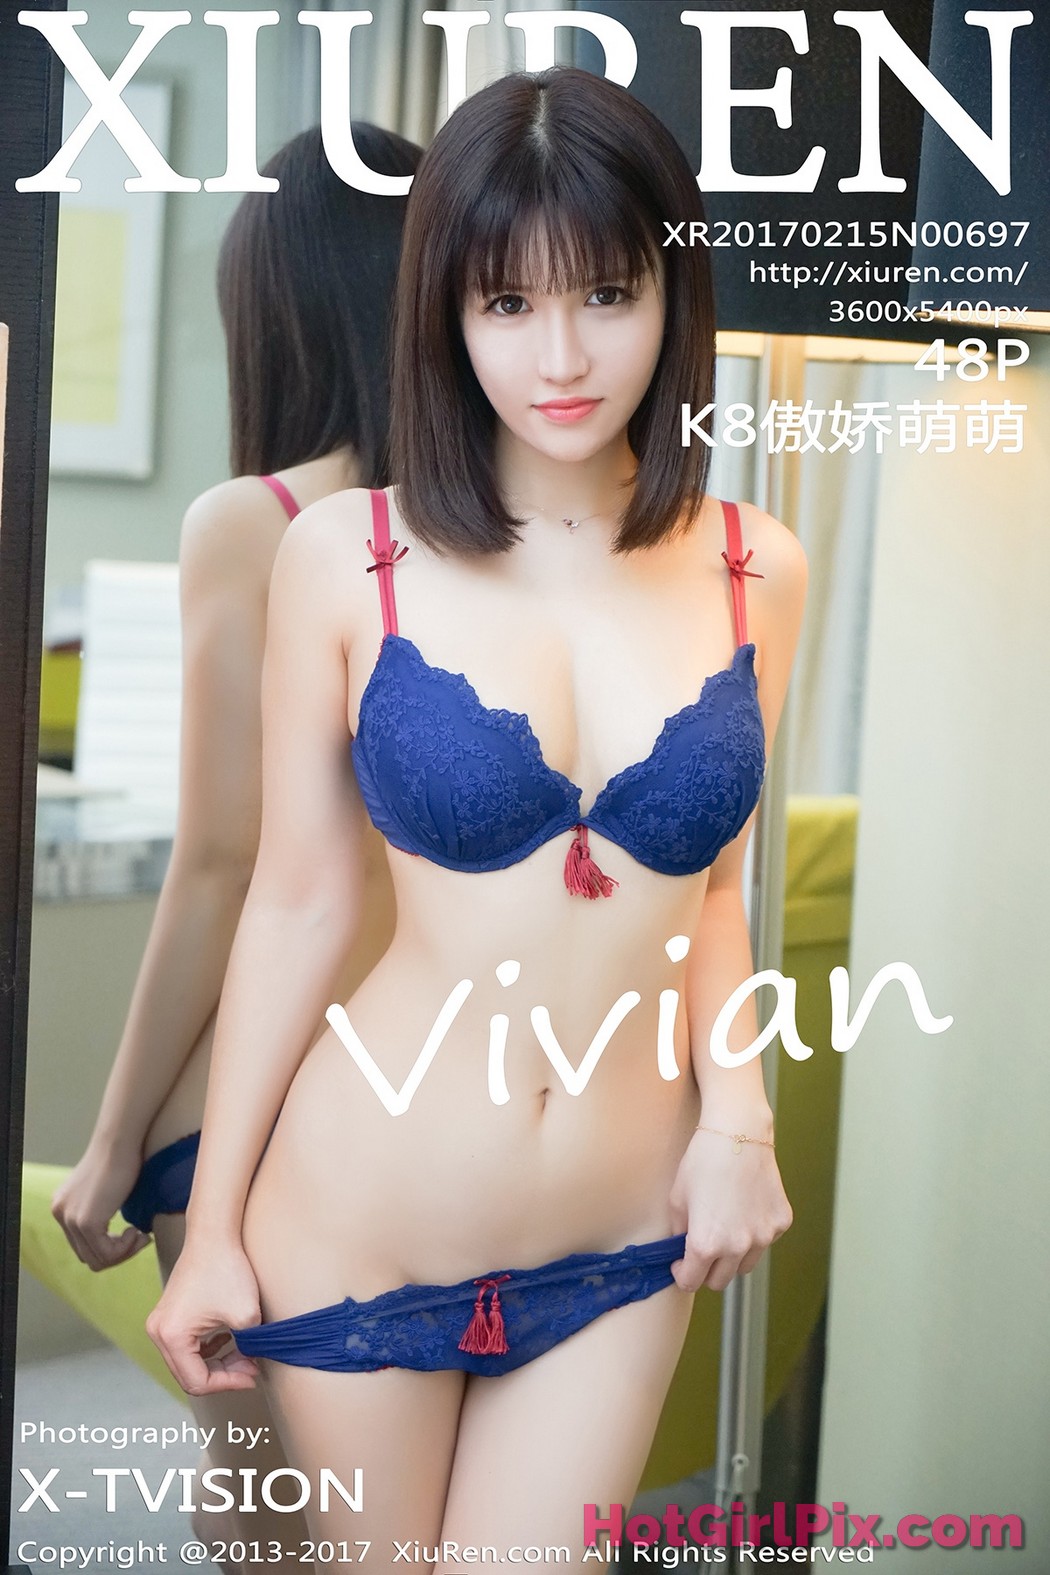 [XIUREN] No.697 K8傲娇萌萌Vivian Aojiao Meng Meng